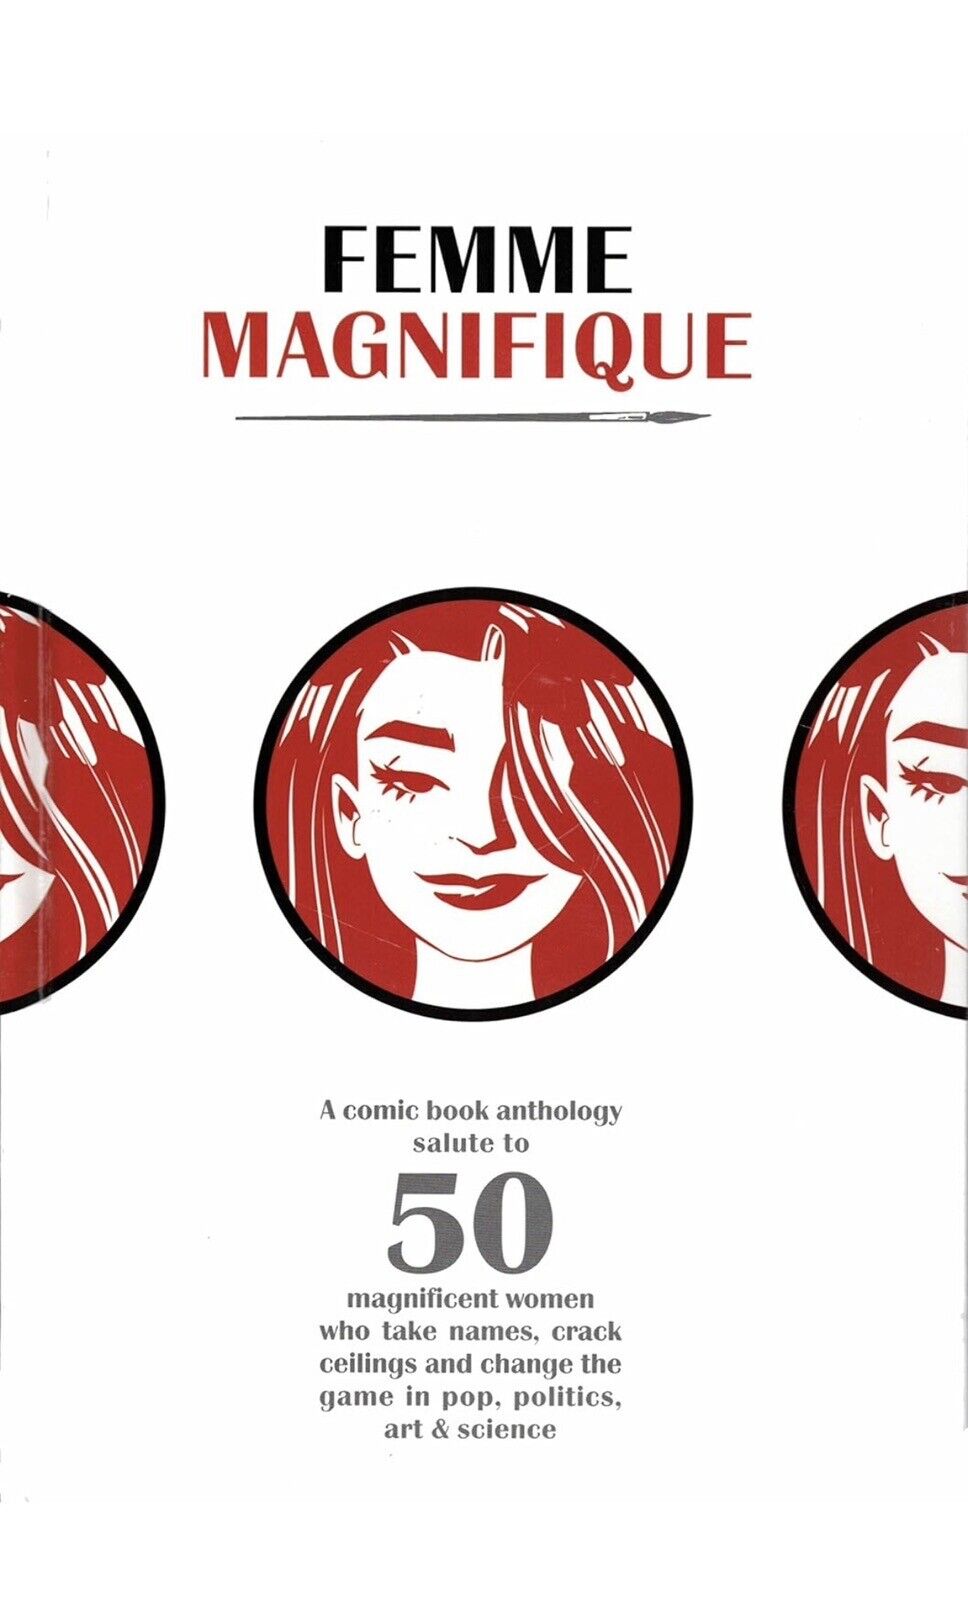 Femme Magnifique by Bond, Shelly, Miller, Kristy,Miller, Brian, Hardcover, Used